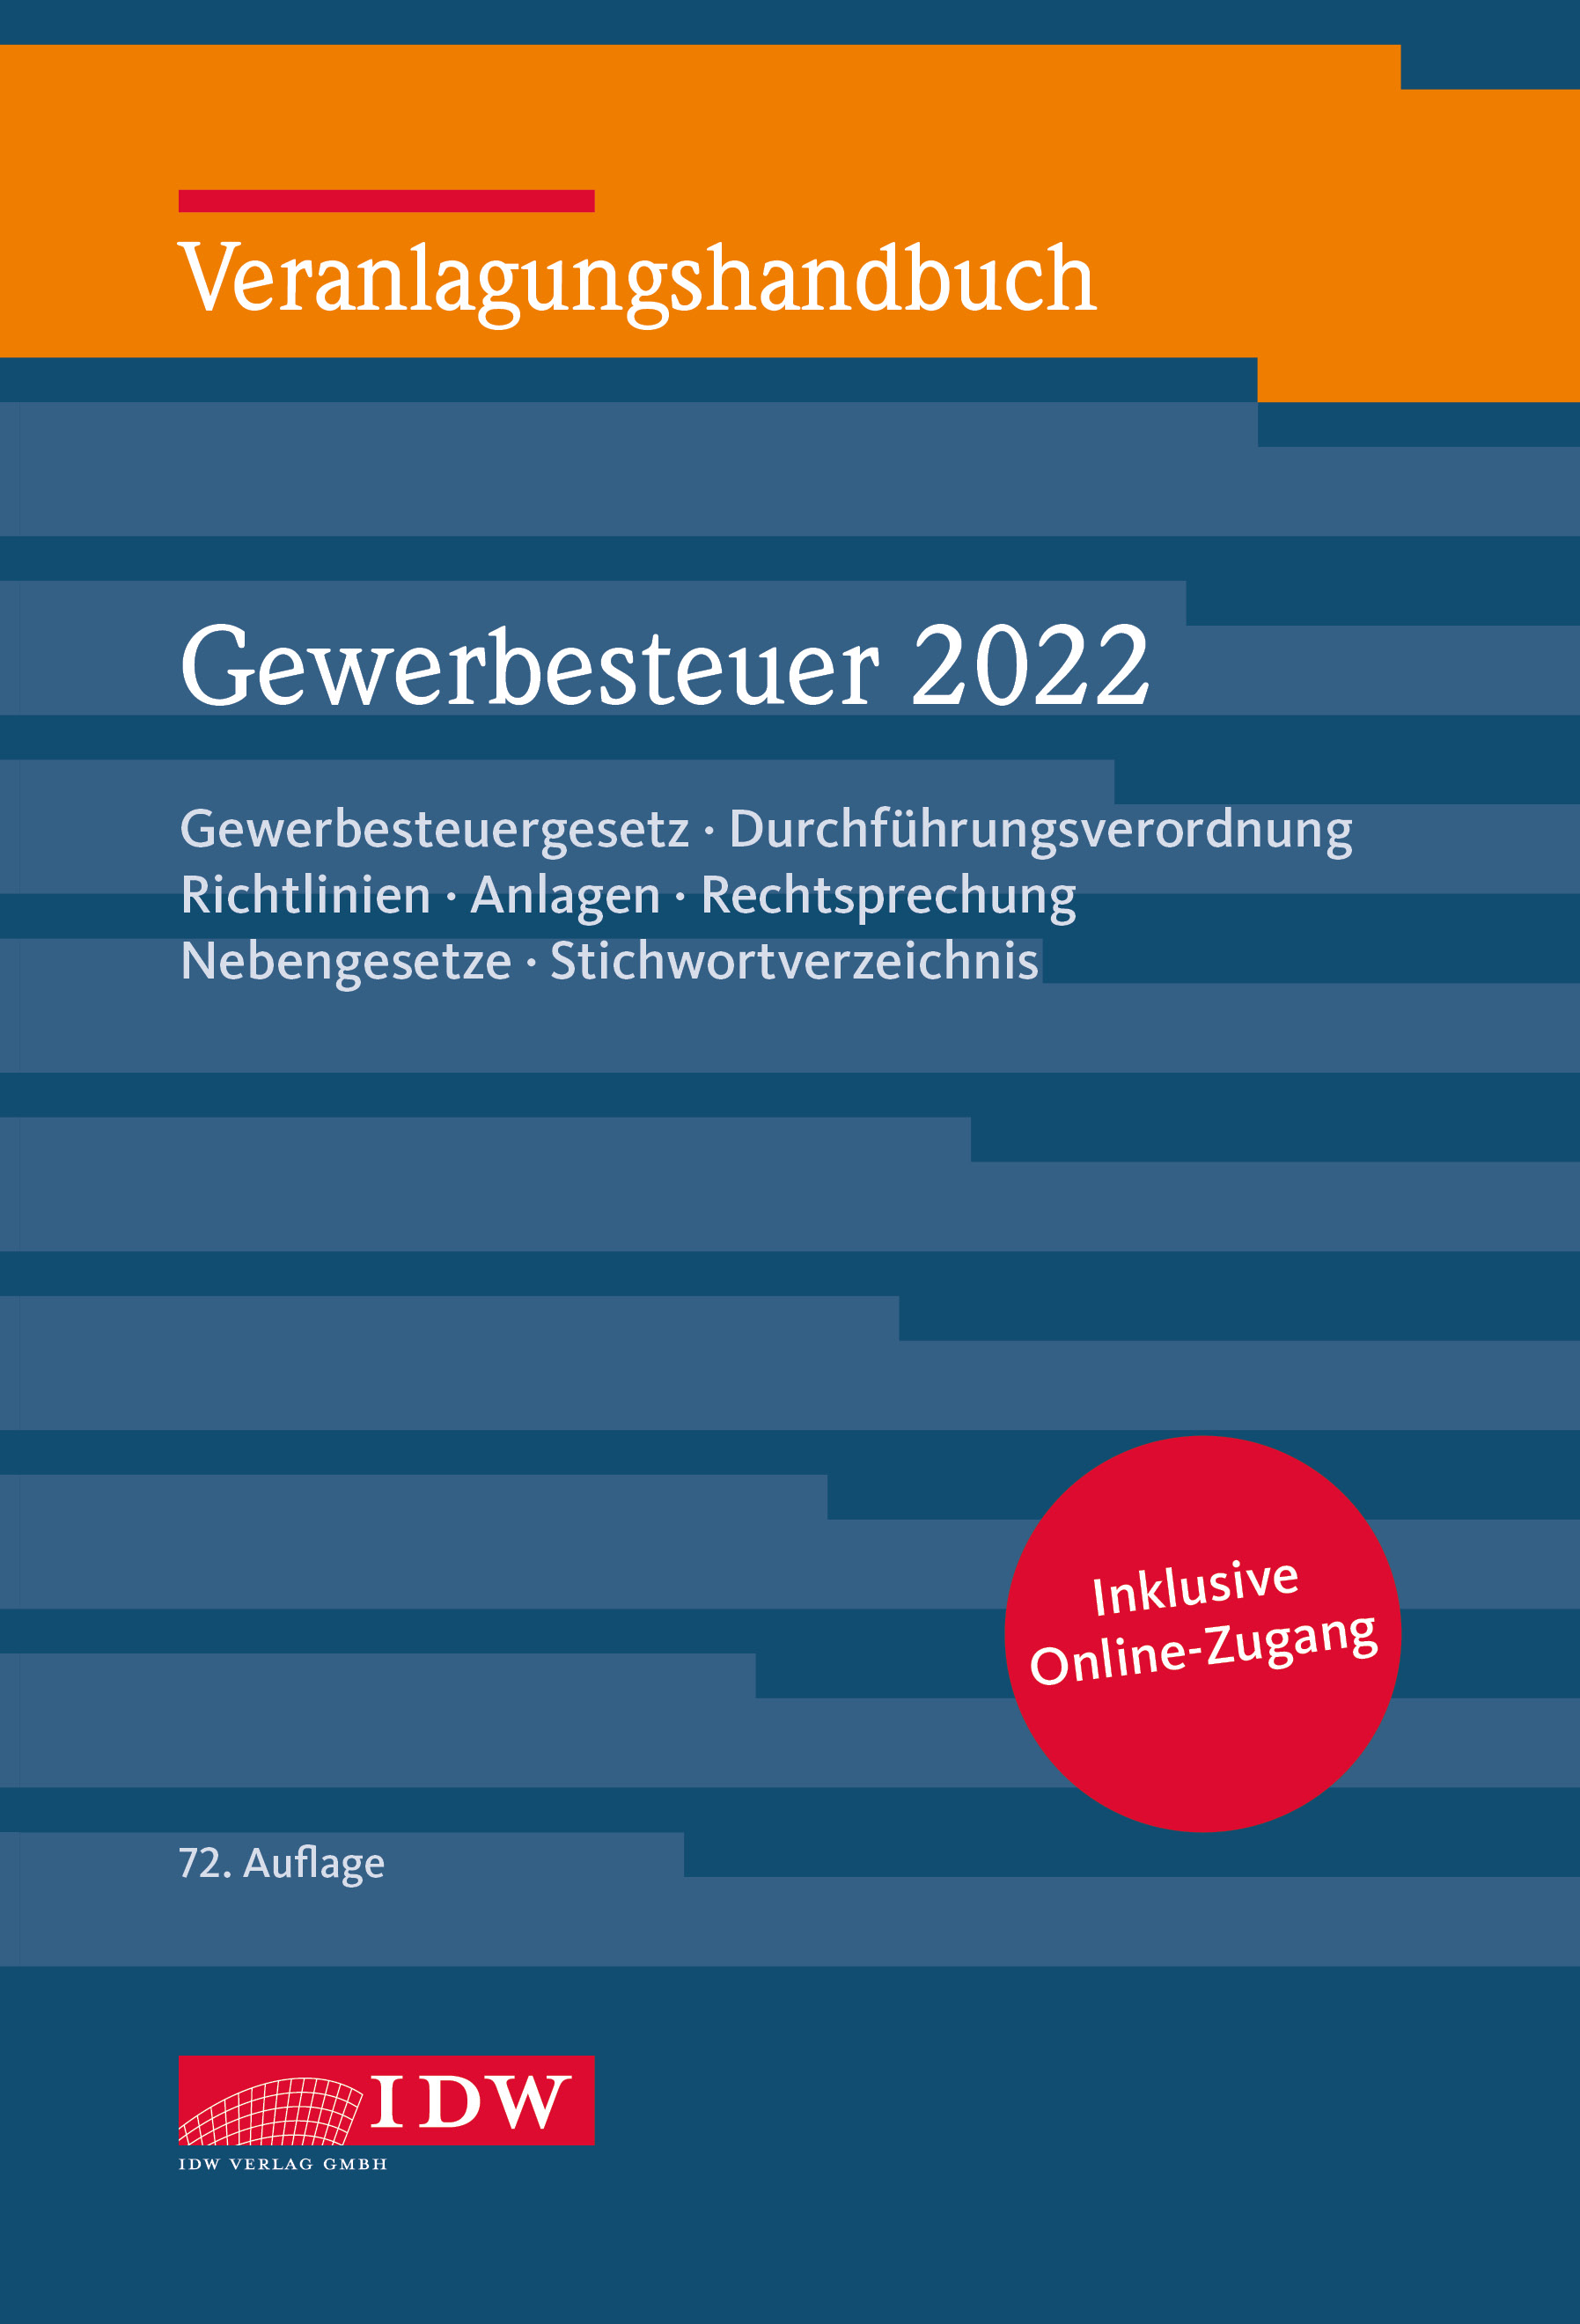 Veranlagungshandbuch Gewerbesteuer 2022